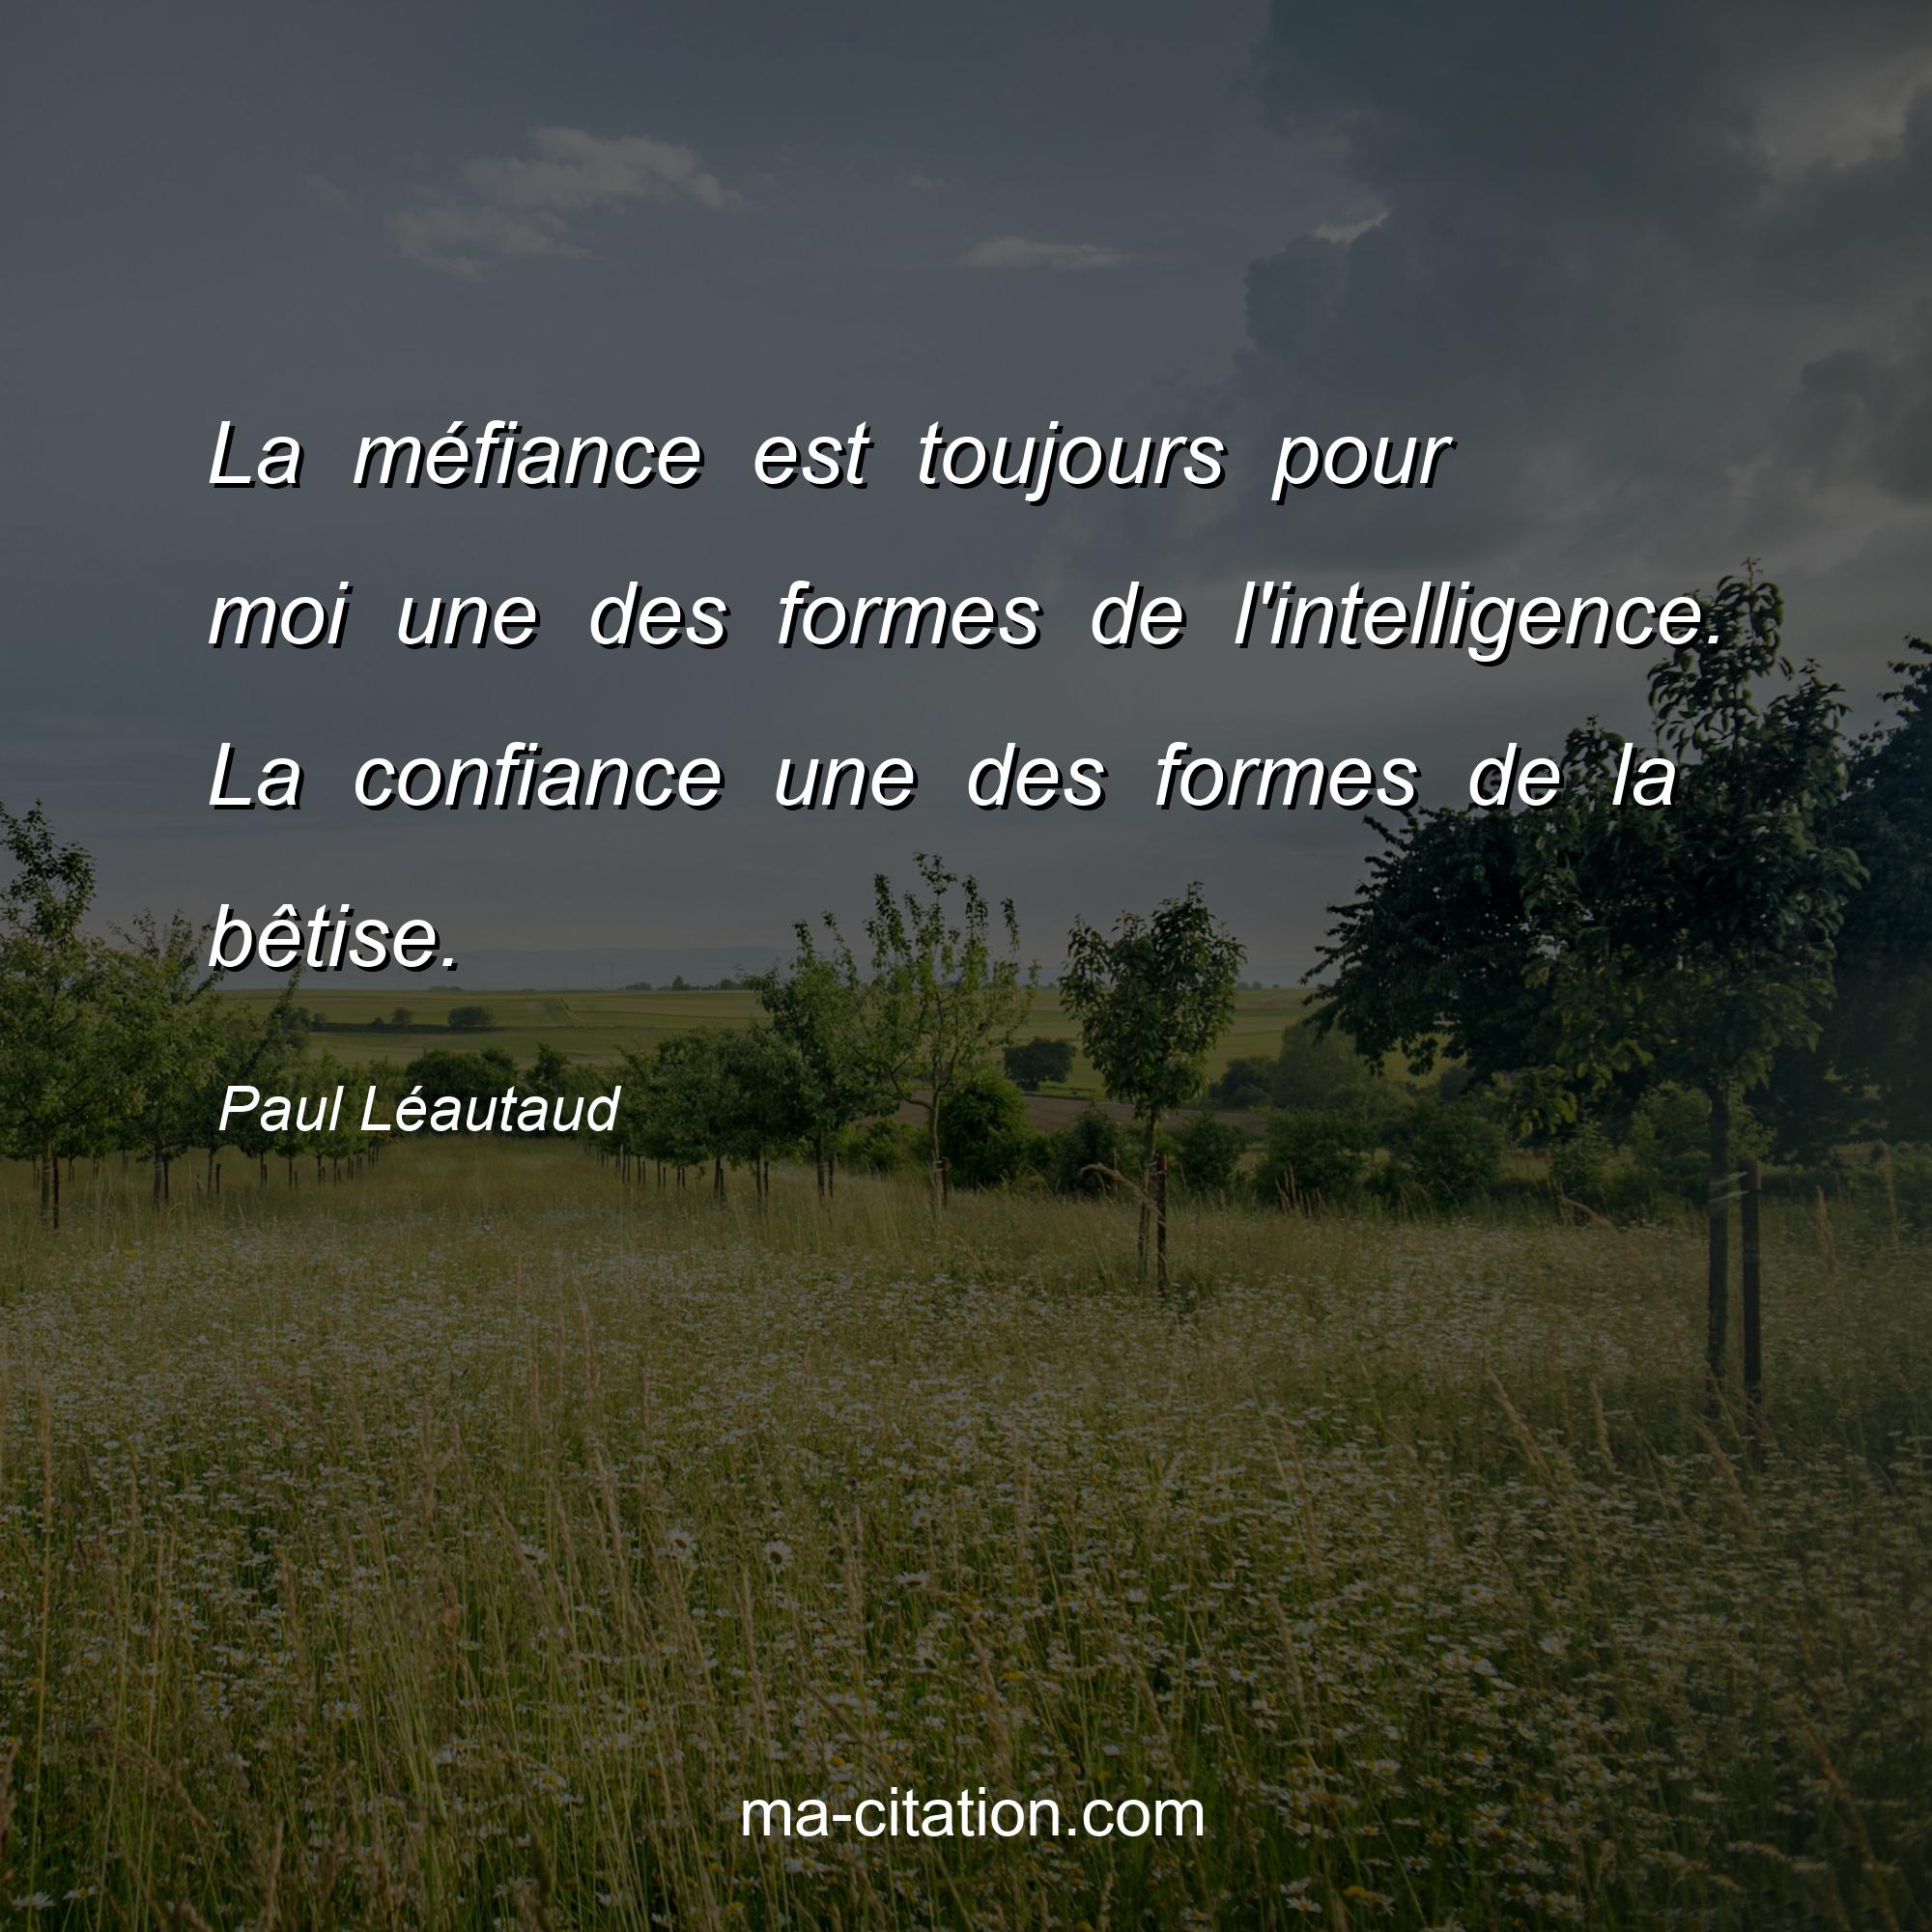 Paul Léautaud : La méfiance est toujours pour moi une des formes de l'intelligence. La confiance une des formes de la bêtise.